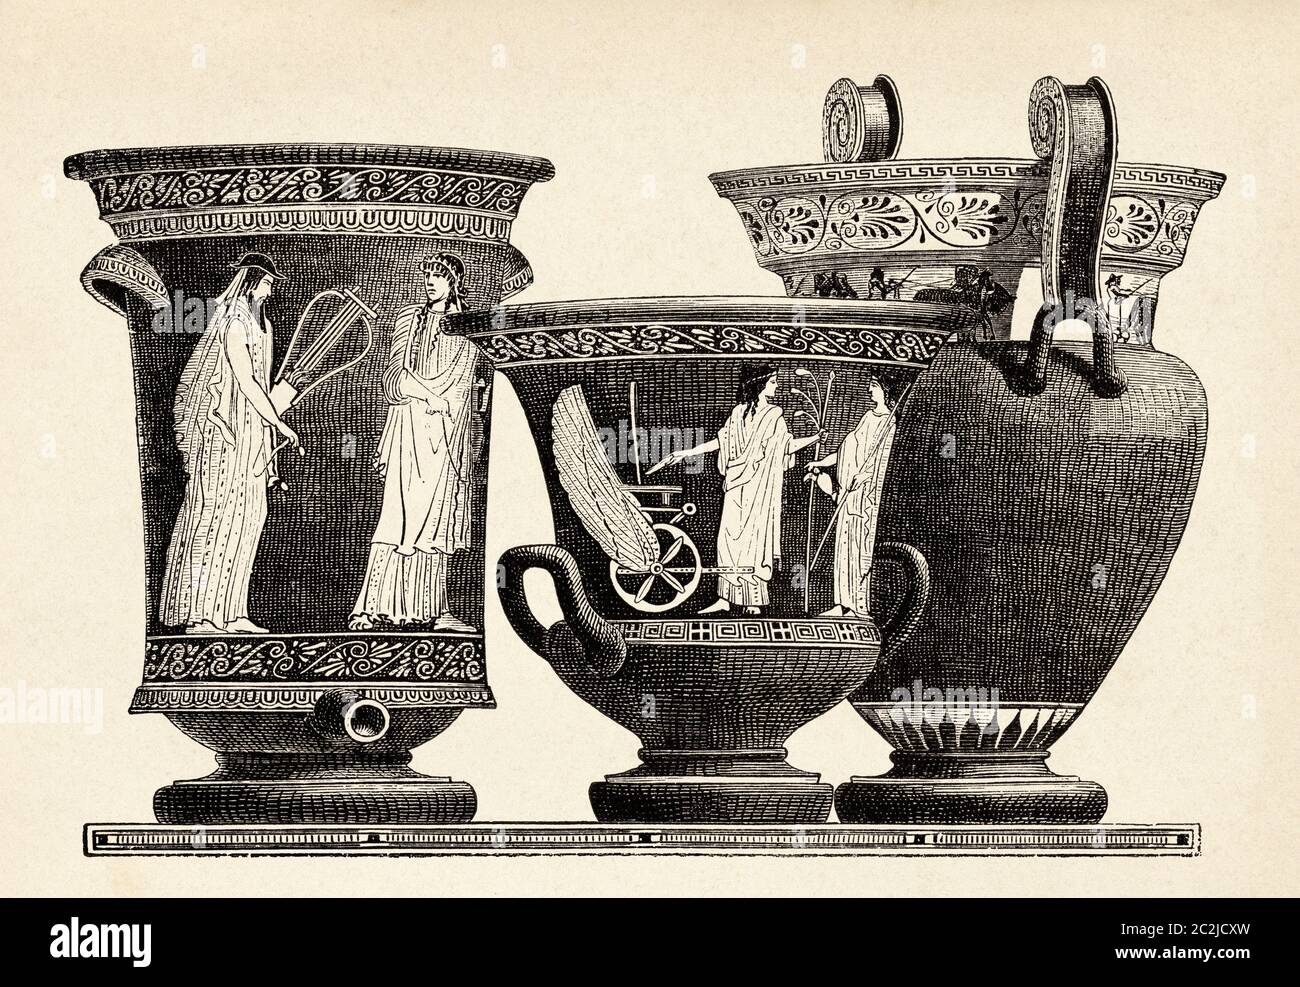 Kraterschüssel aus Terrakotta-Säulen zum Mischen von Wein und Wasser im antiken Griechenland. Alte Illustration aus dem 19. Jahrhundert, El Mundo Ilustrado 1880 Stockfoto